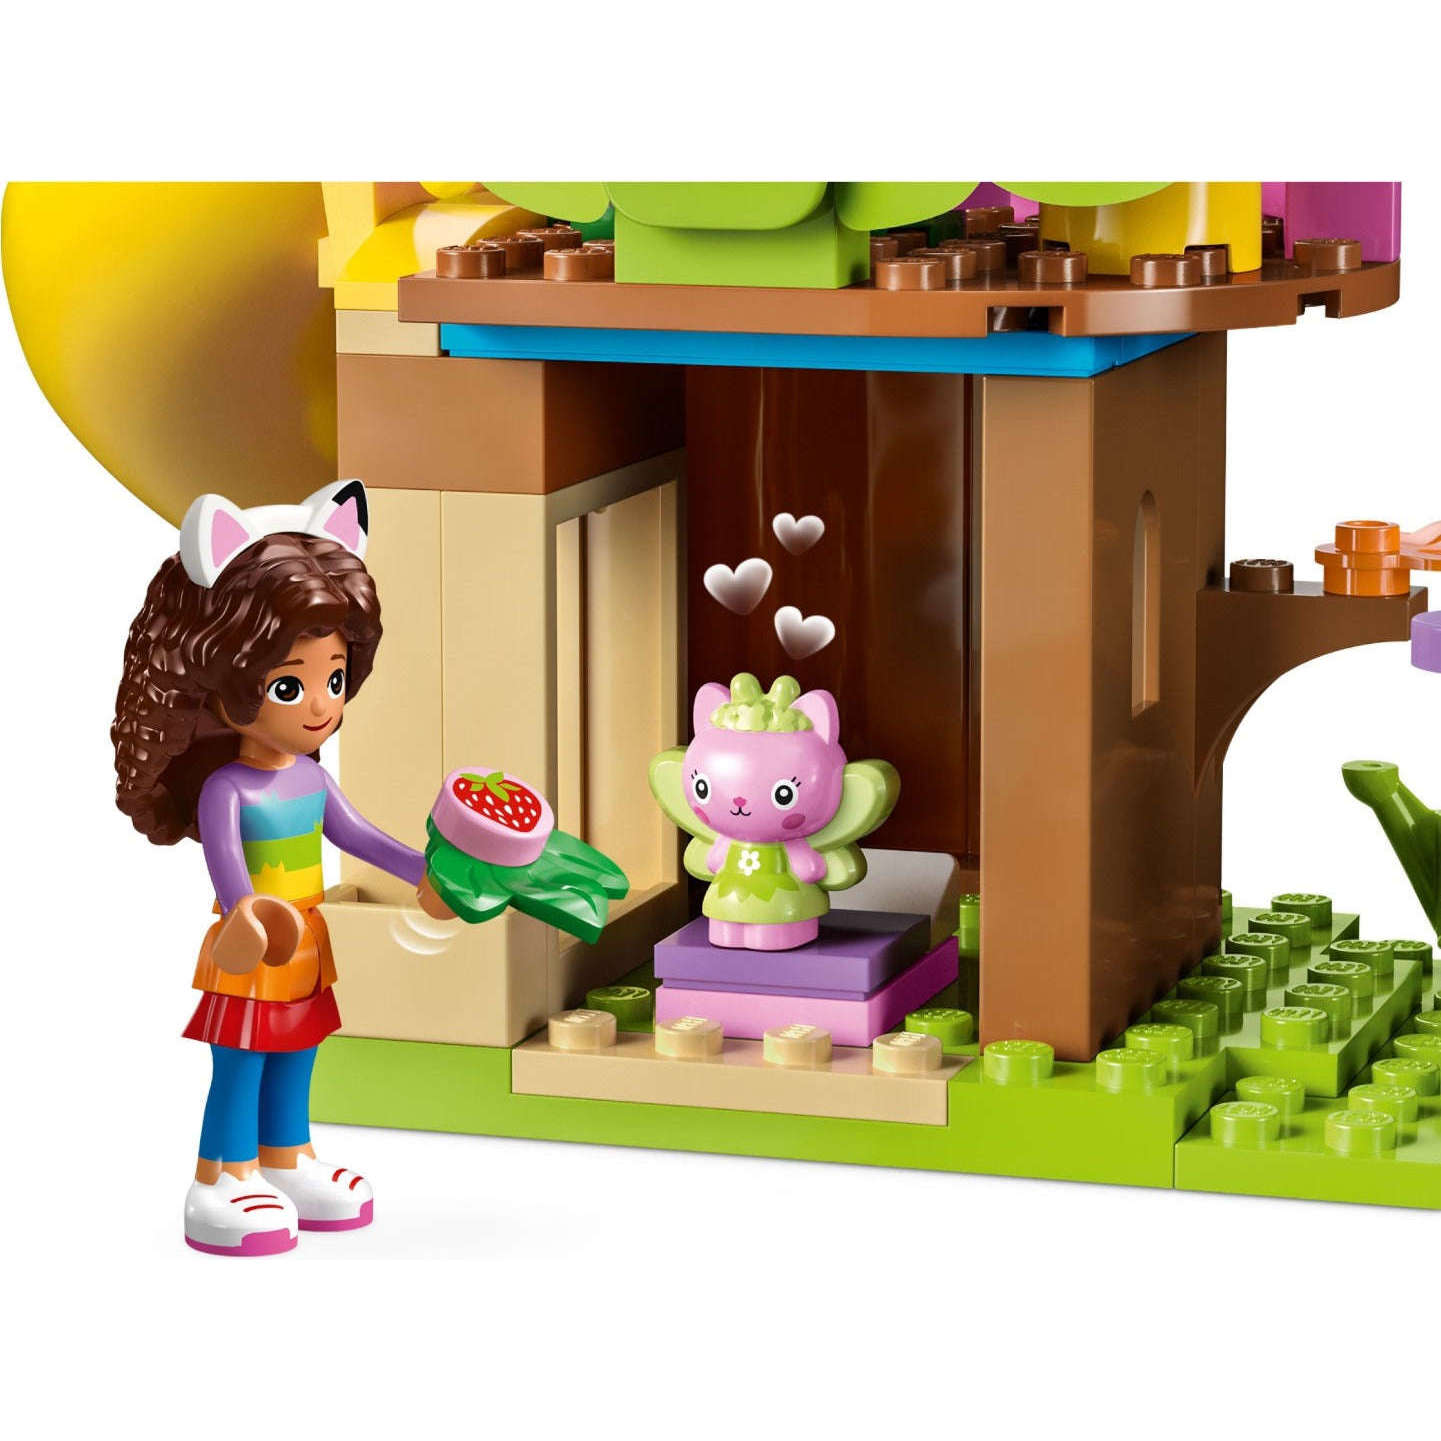 Toys N Tuck:Lego 10787 Gabby's Dollhouse Kitty Fairy's Garden Party,Lego Gabby's Dollhouse